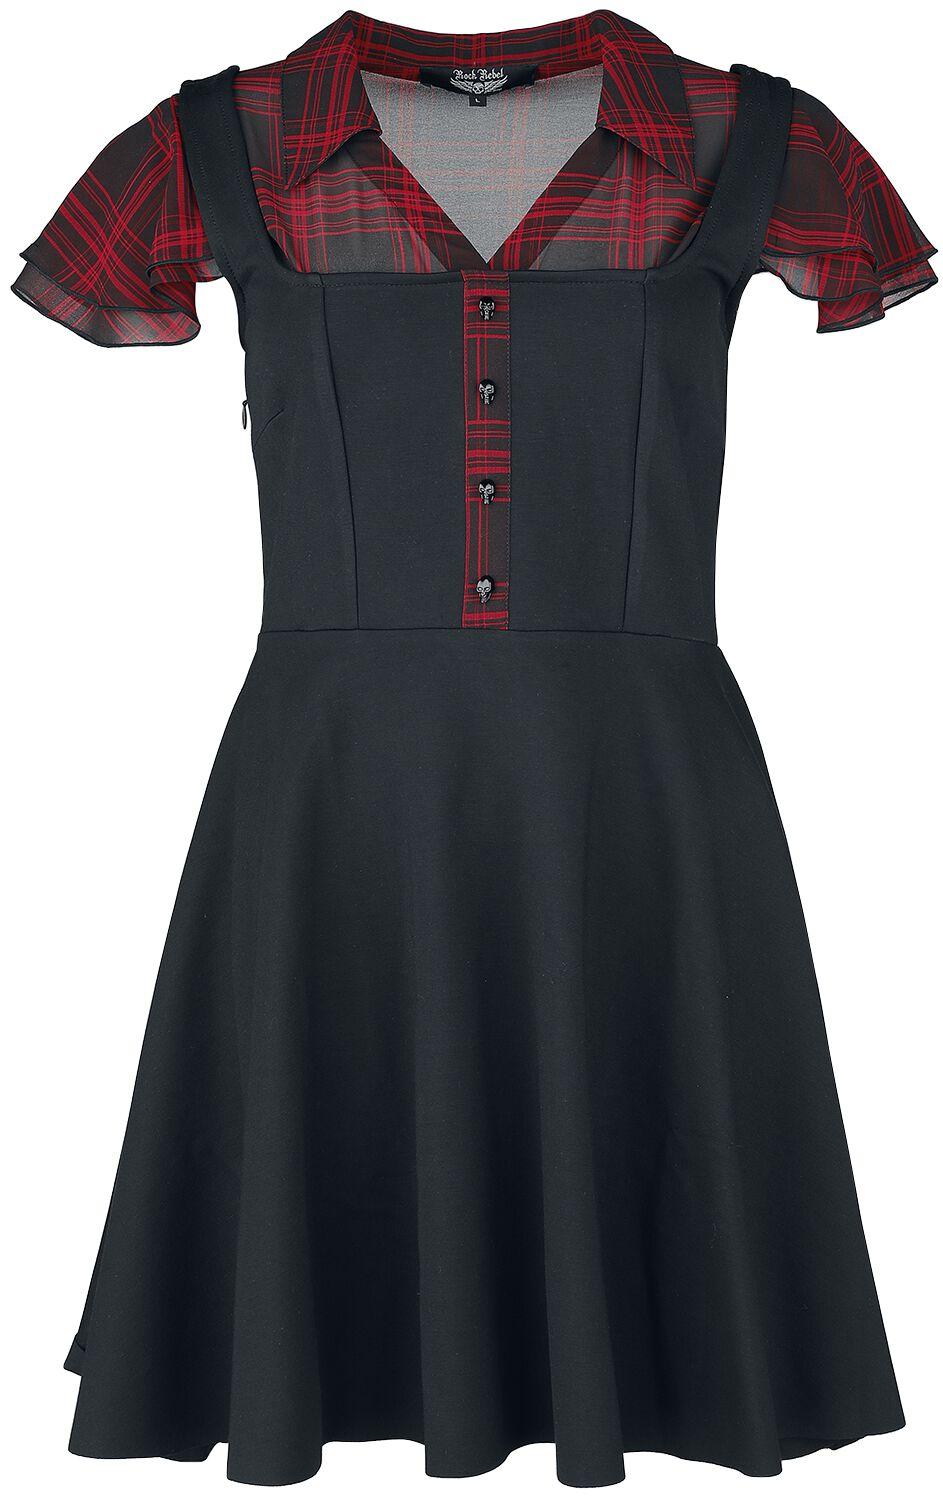 Rock Rebel by EMP Layer Look Kleid mit karierter Bluse Kurzes Kleid rot schwarz  - Onlineshop EMP